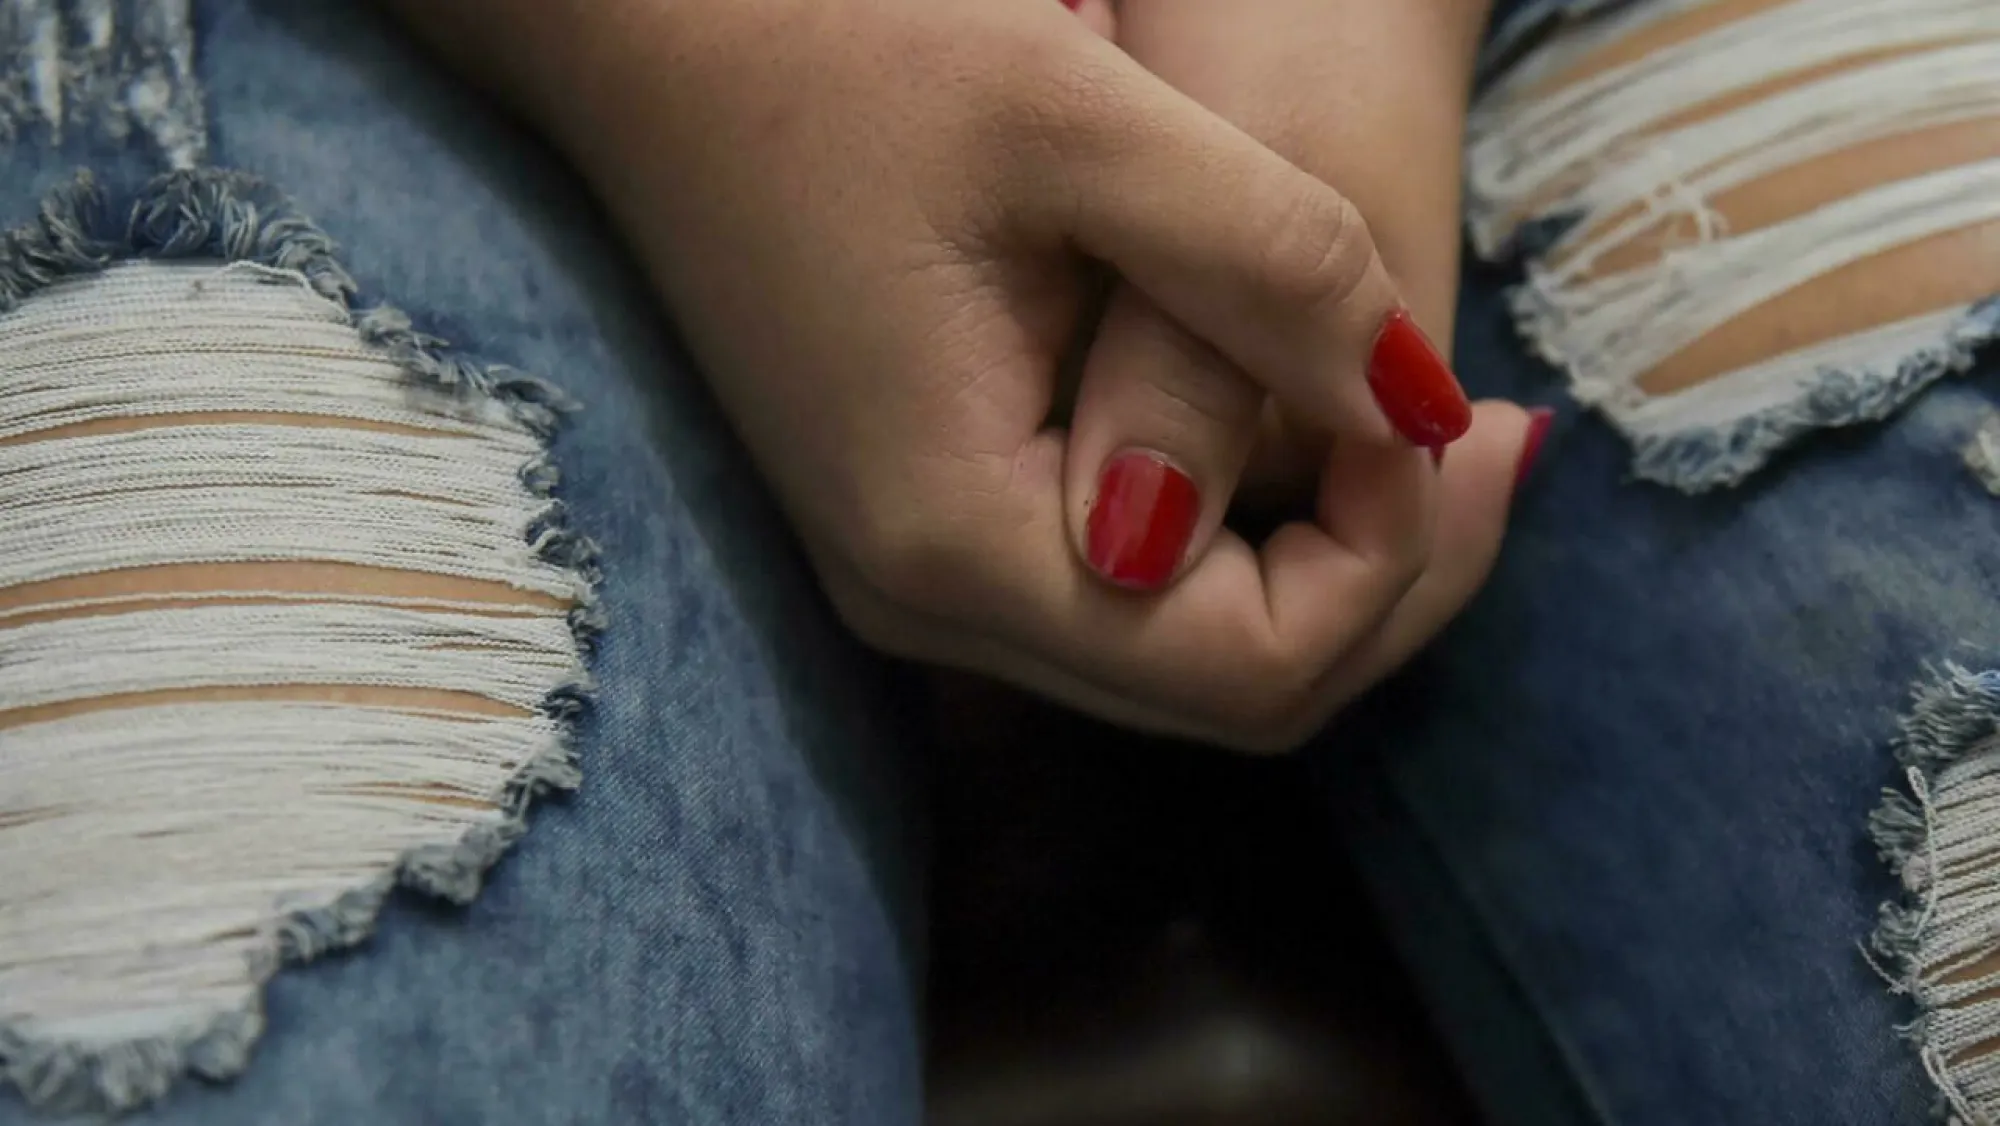 Redes de explotación sexual en España se focalizan cada vez más en América Latina